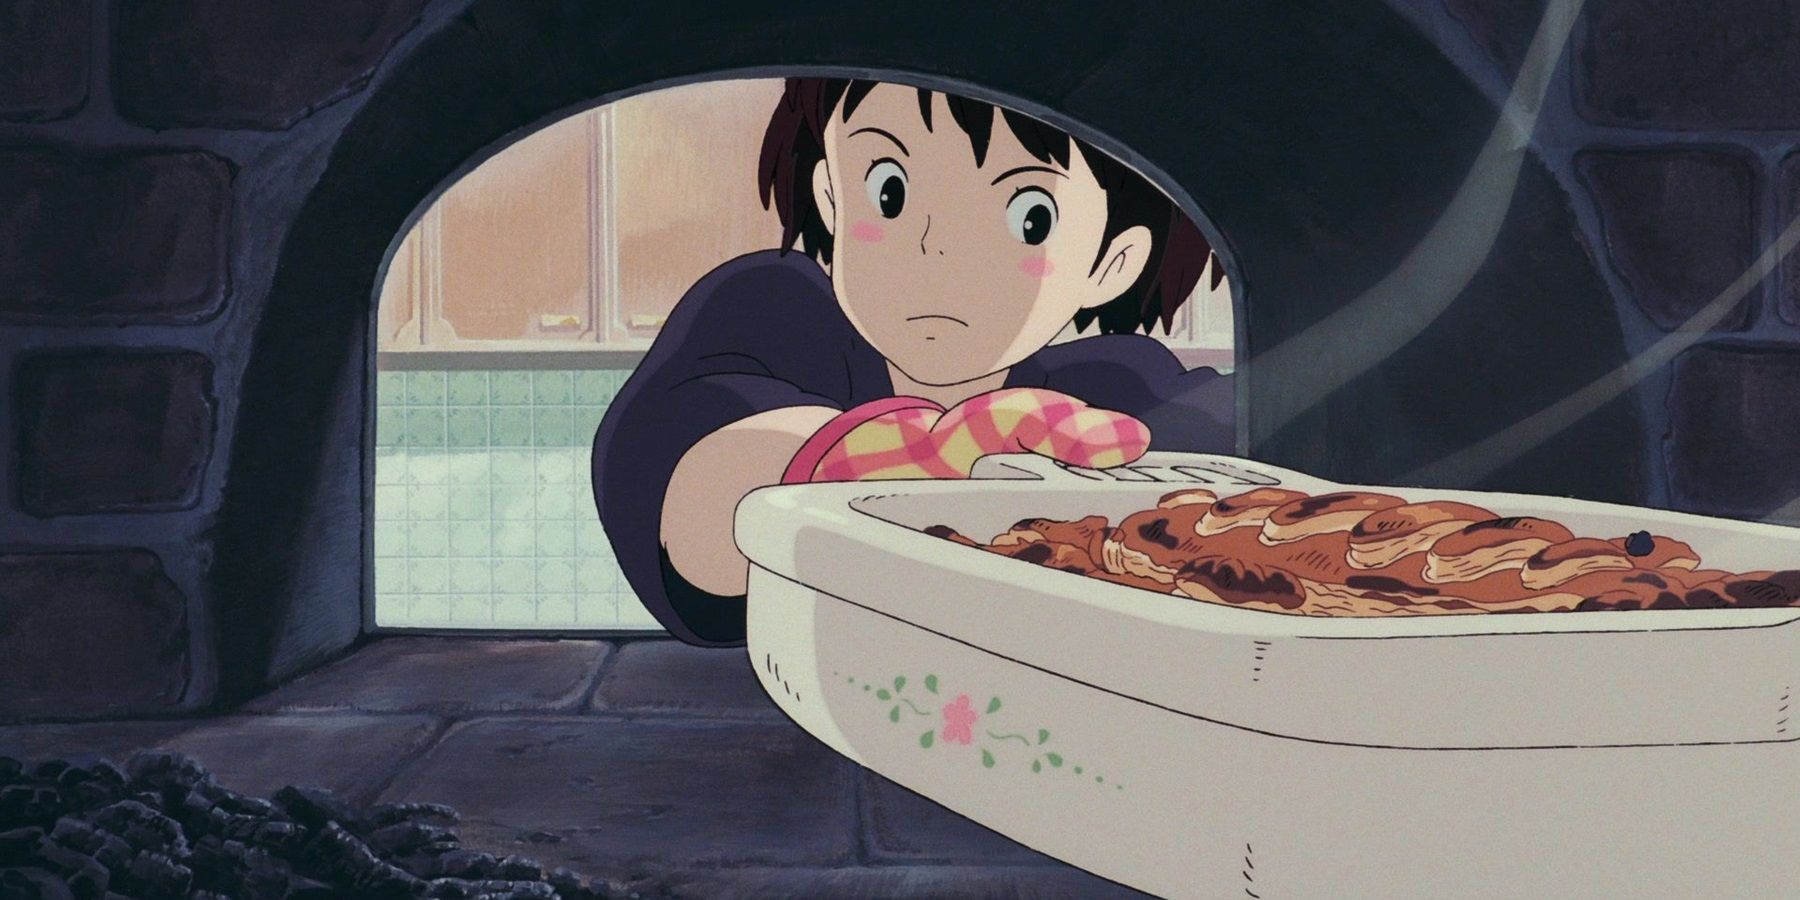 Лучшие уроки жизни от студии Ghibli